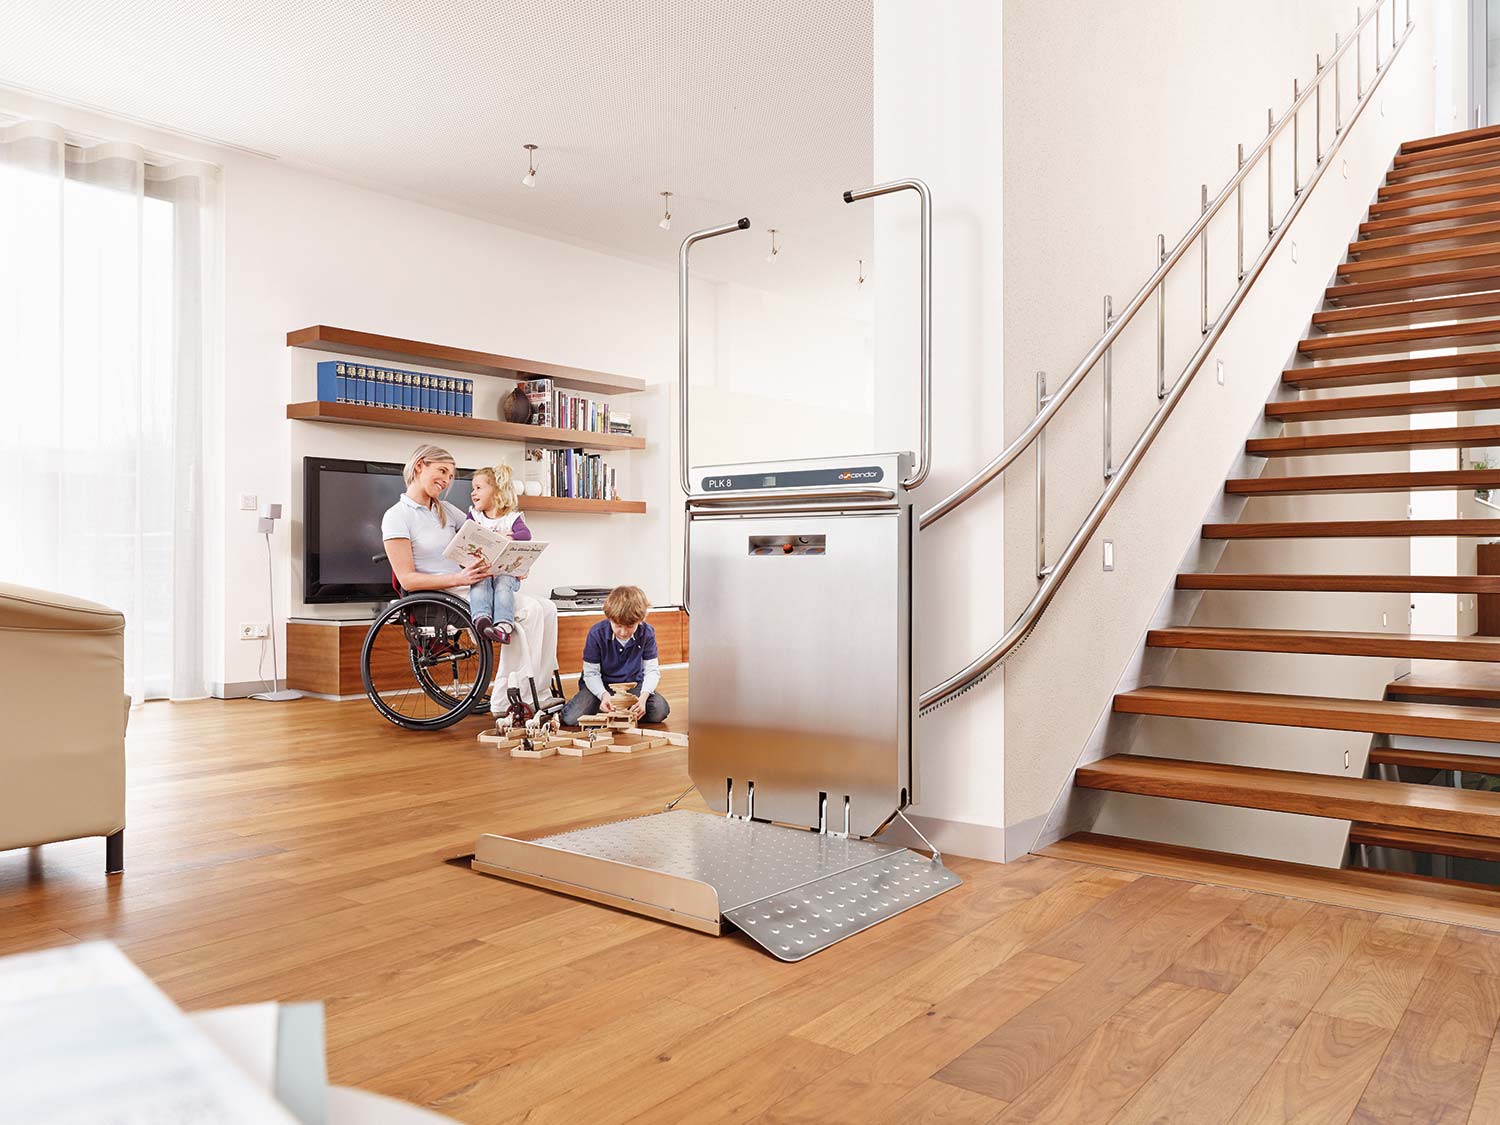 Platformy schodowe Ascendor PLK 8 można zamontować w domu